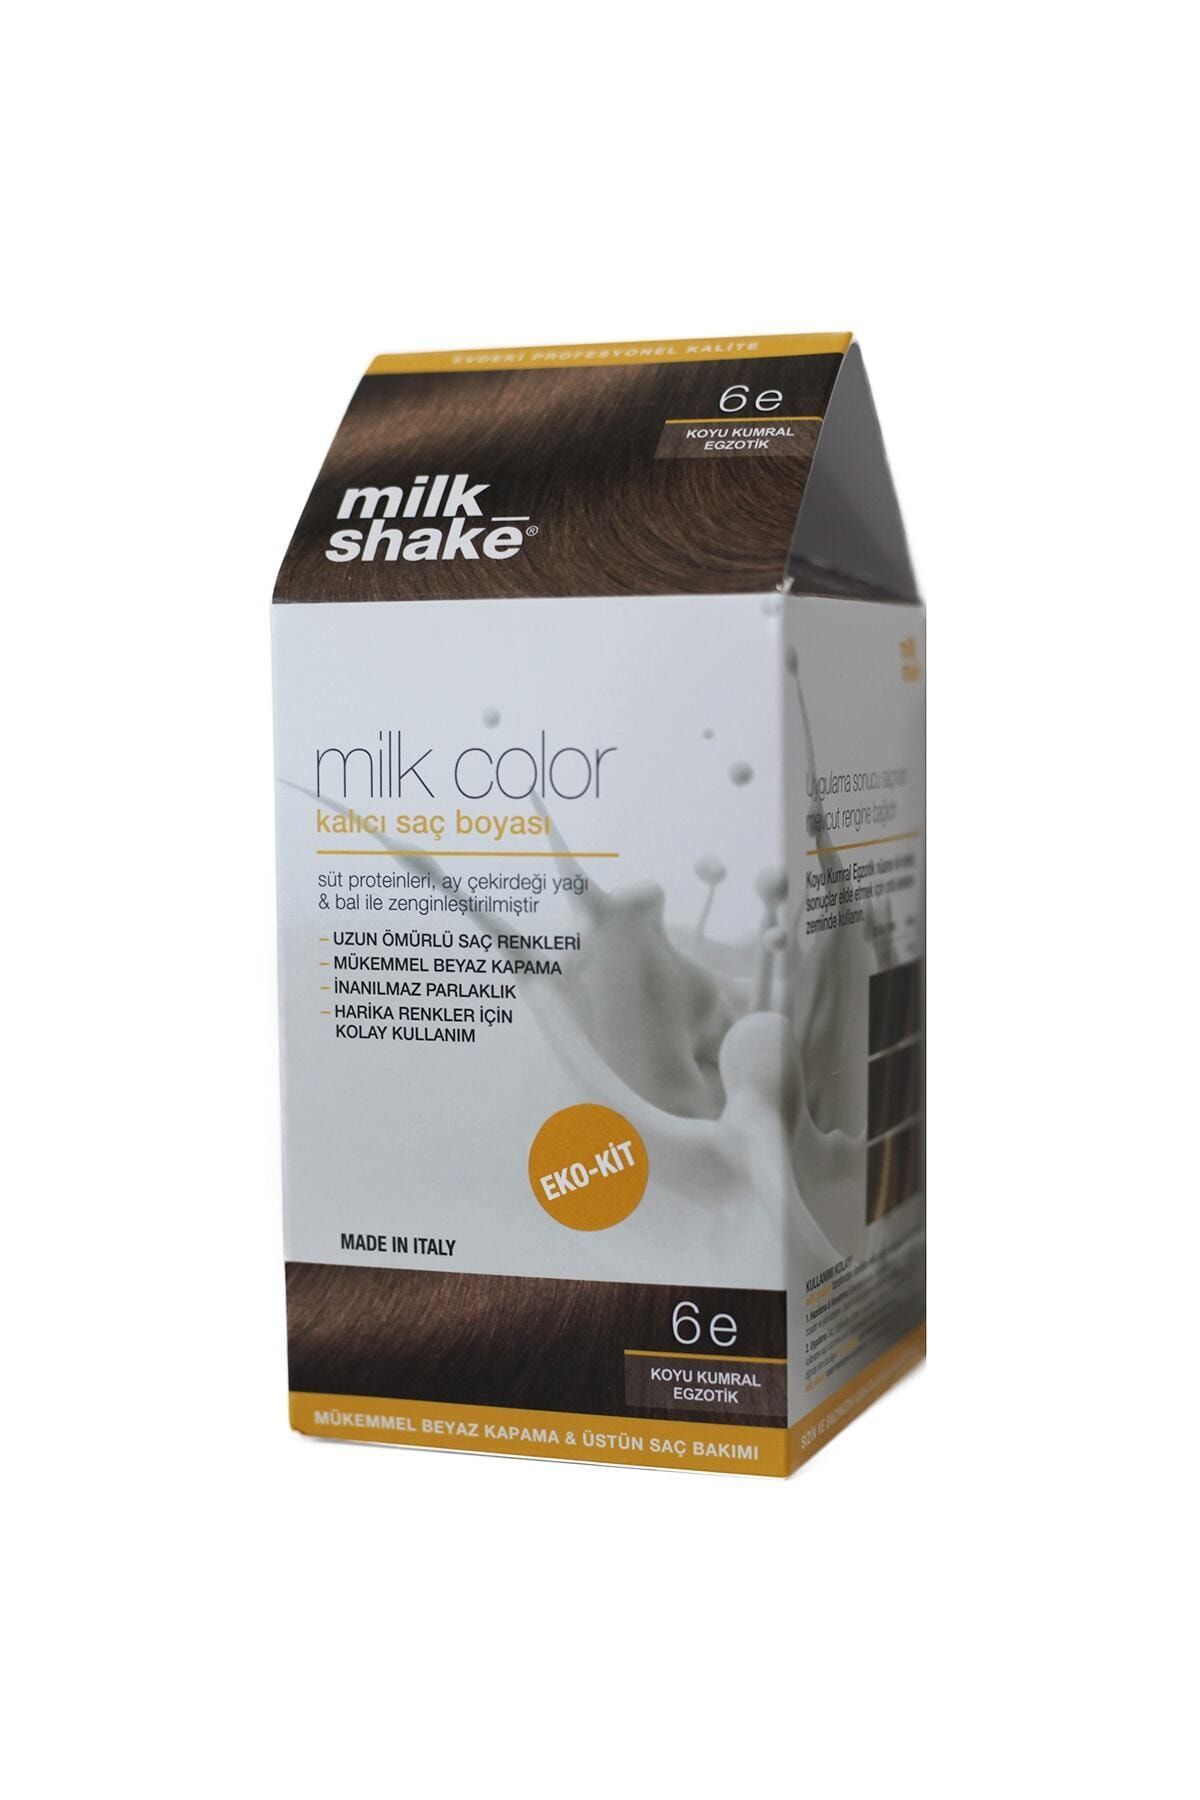 Milkshake Milk Color Eko-kit Koyu Kumral Egzotik -6e (Köpüksüz)